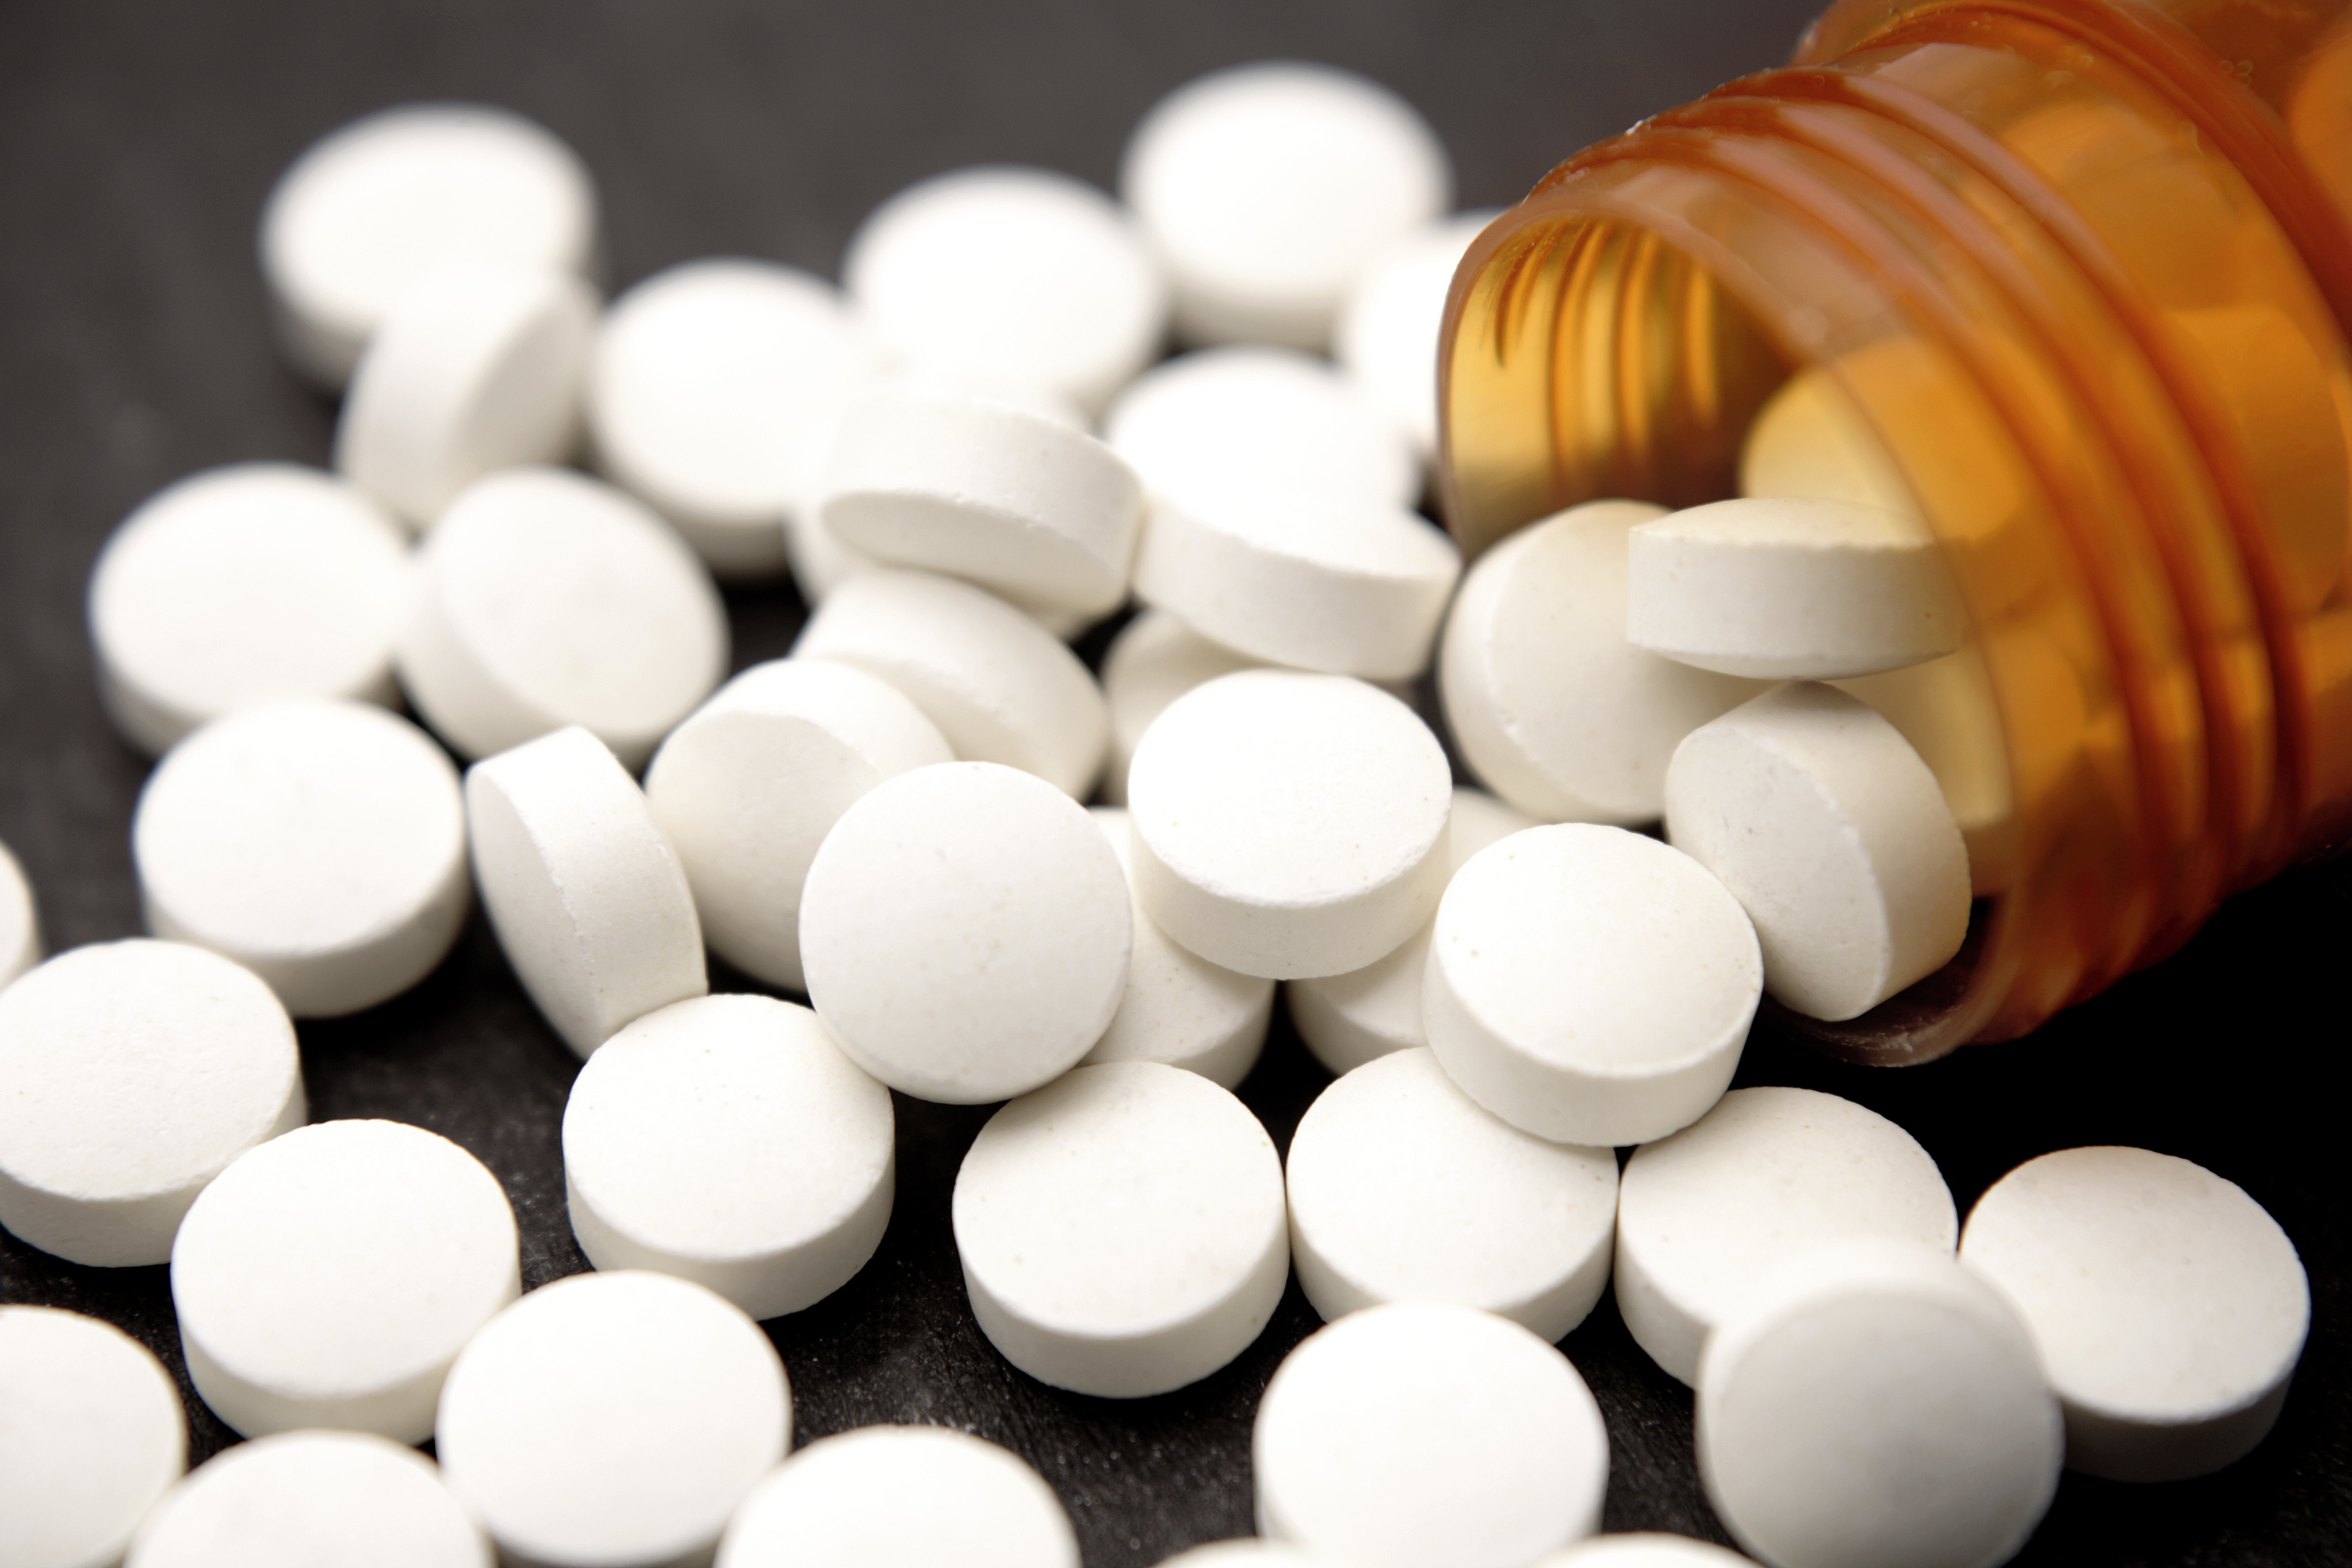 Un nou studiu confirmă: Aspirina poate reduce riscul de cancer